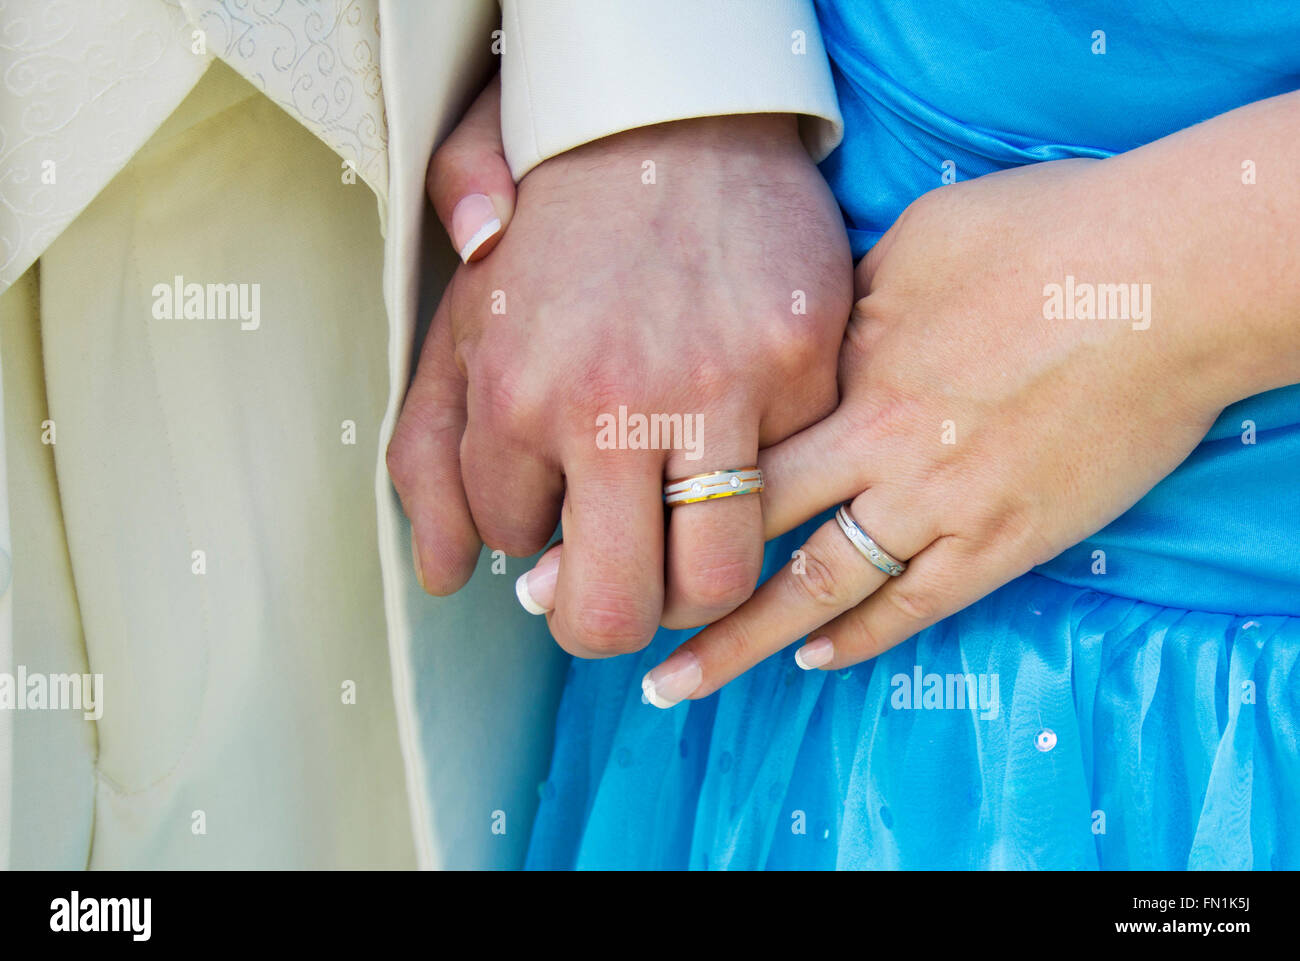 Hochzeit Bild Nahaufnahme halten Hand zeigen Ringe Teil des blauen Kleid und Creme-Suite. Querformat vermählten neu. Klassische Hochzeit Fotografie Bild Stockfoto